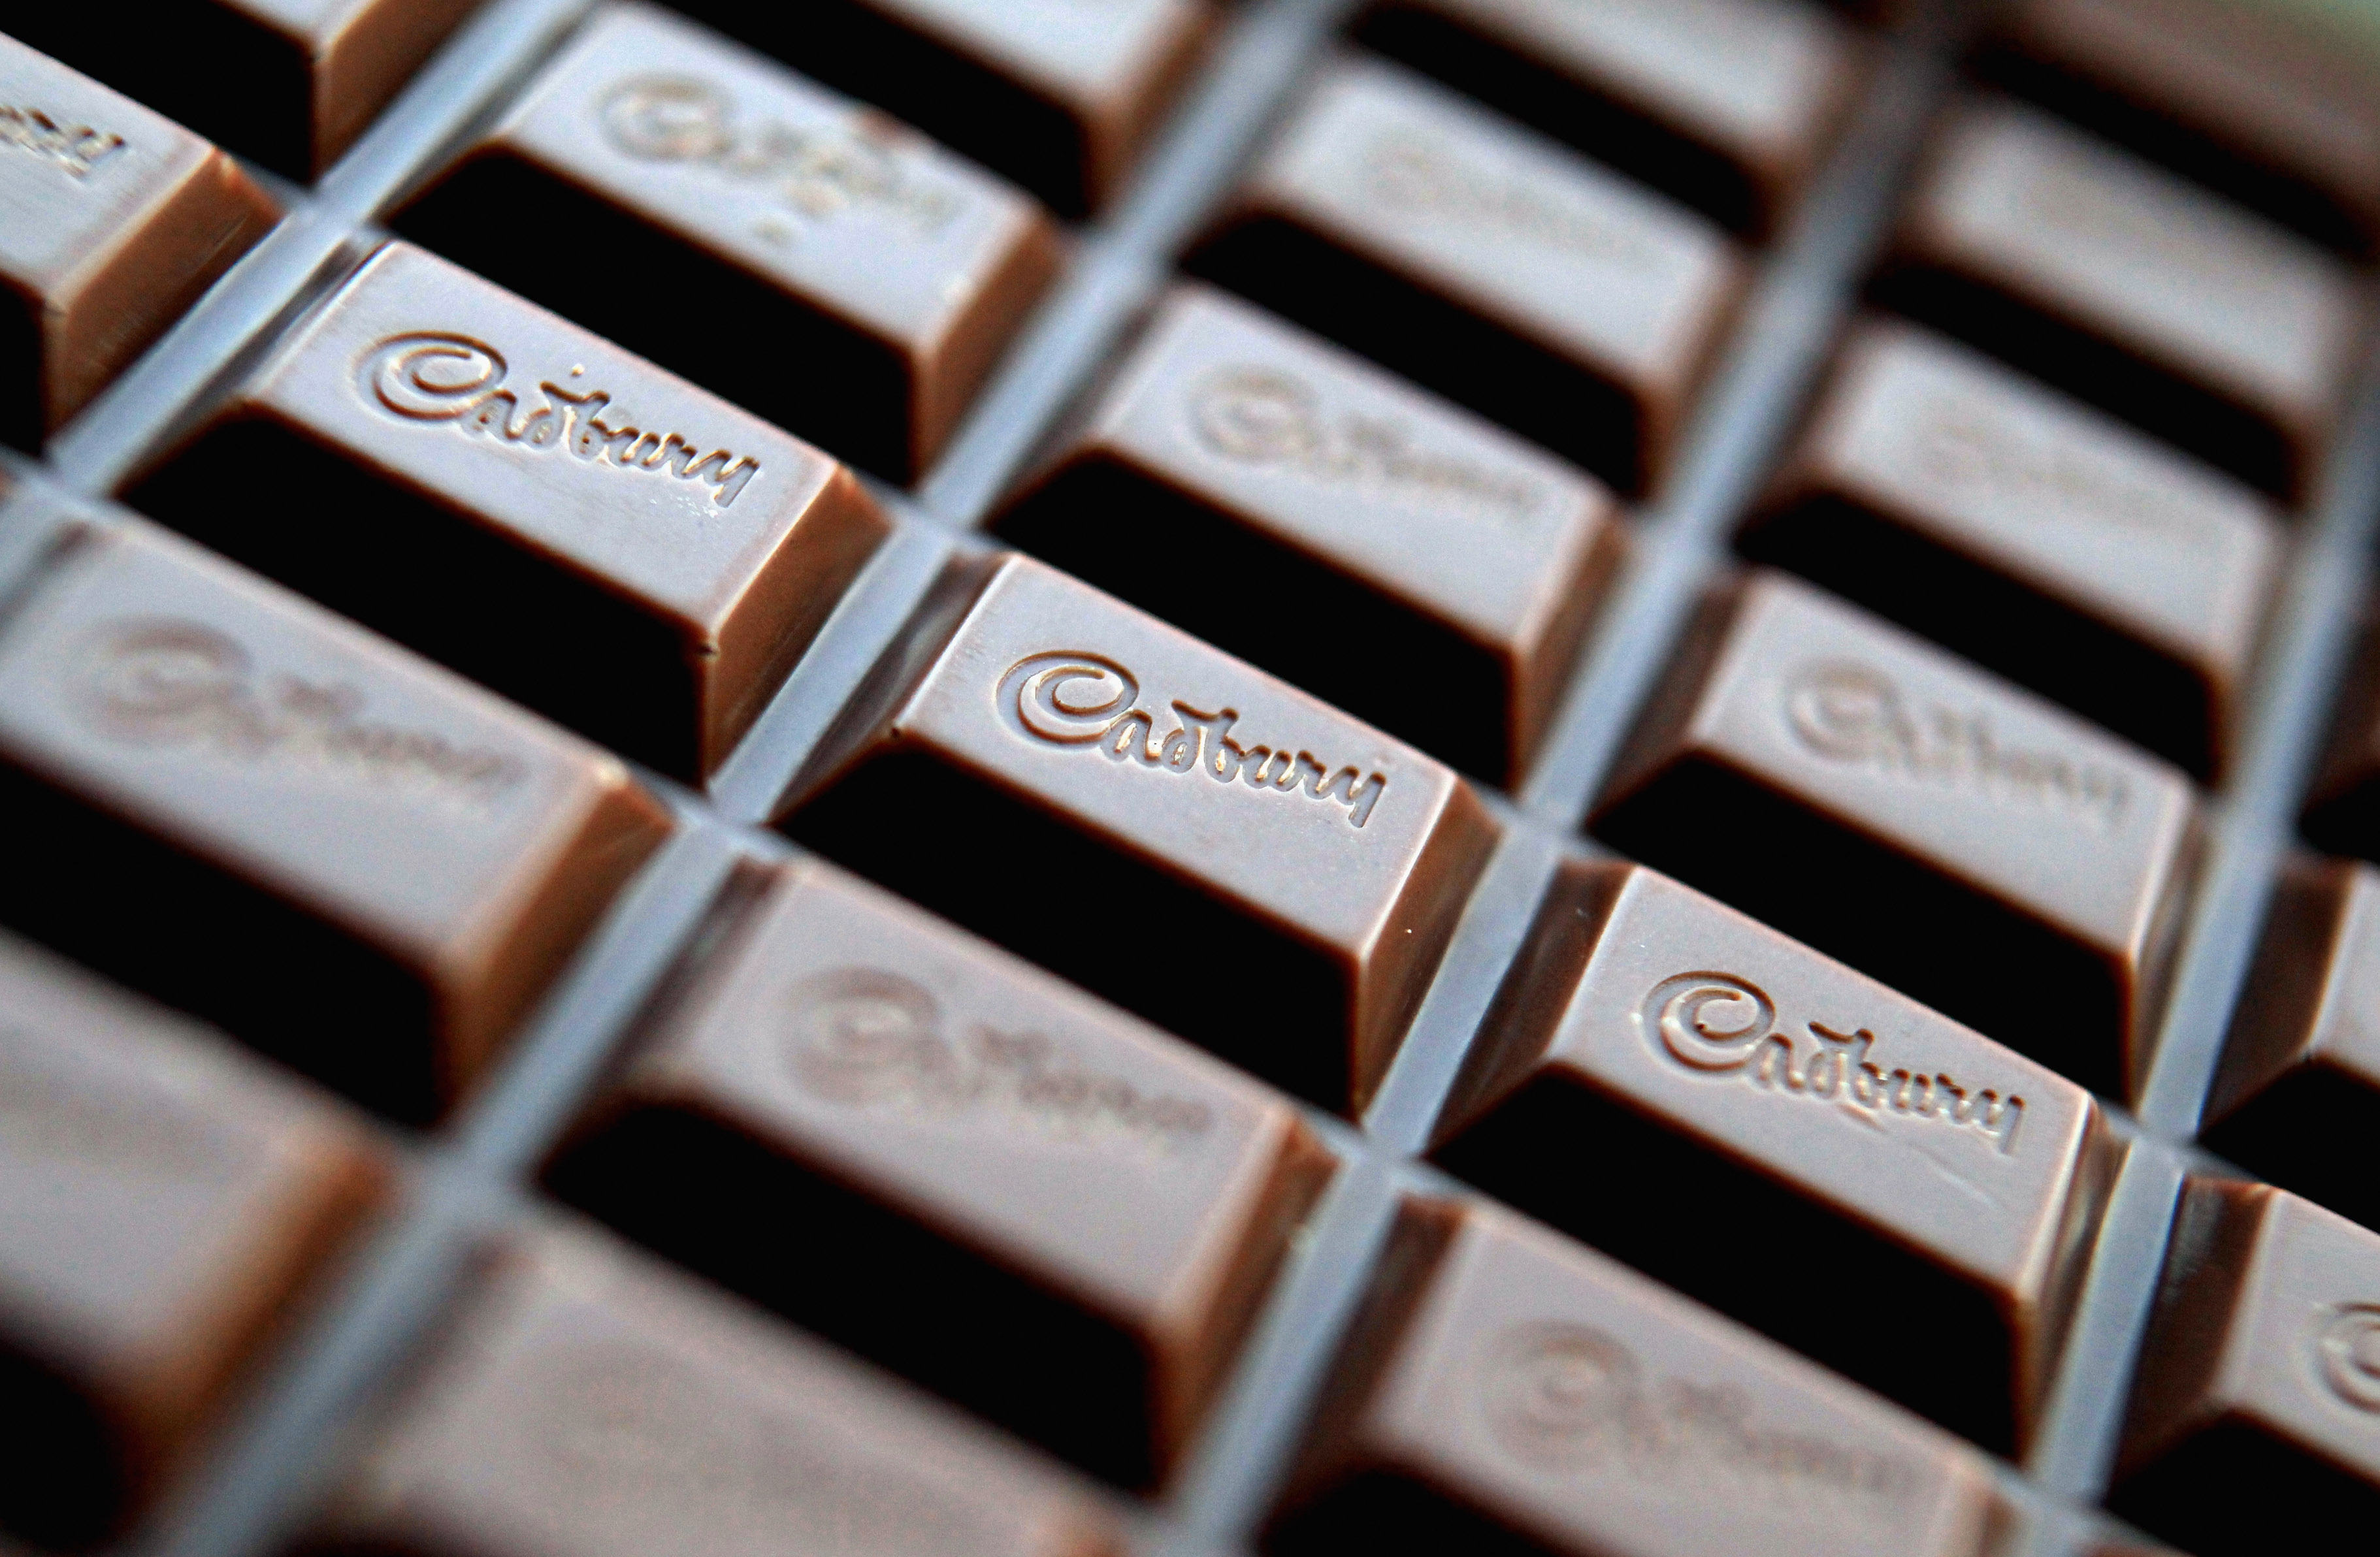 Uit onderzoek blijkt dat je slimmer wordt door het eten van chocolade